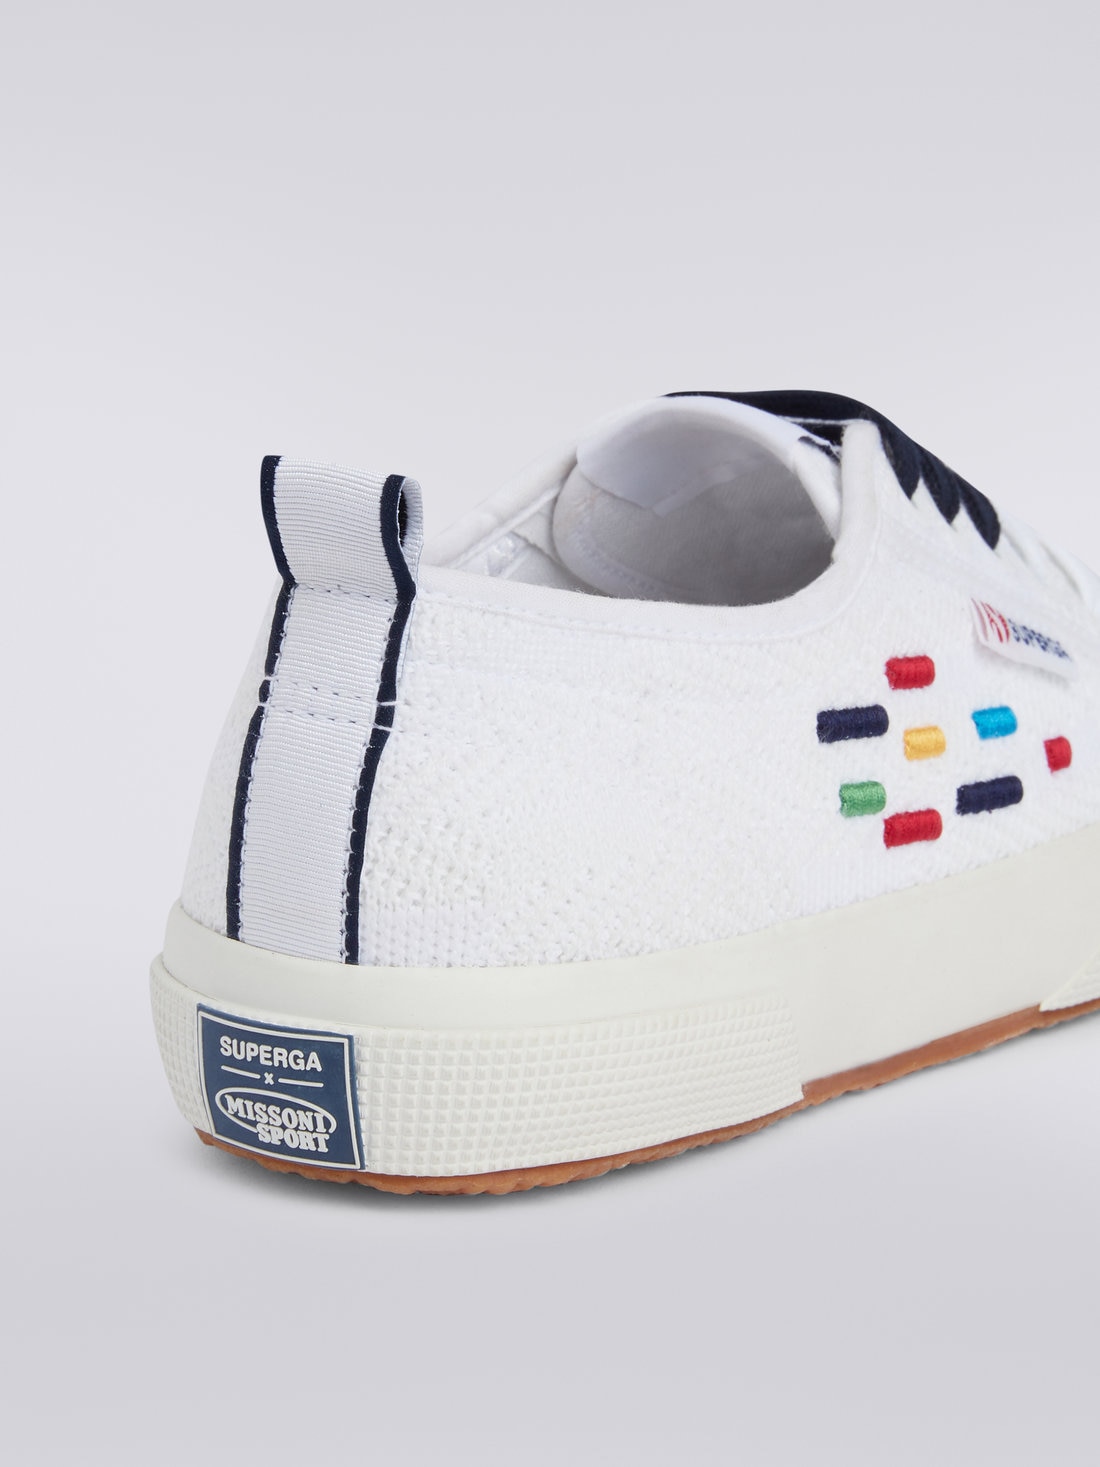 Superga X Missoni Sneaker in cotone , Multicolore  - LS23WY0BBV00FLSM9CX - 3